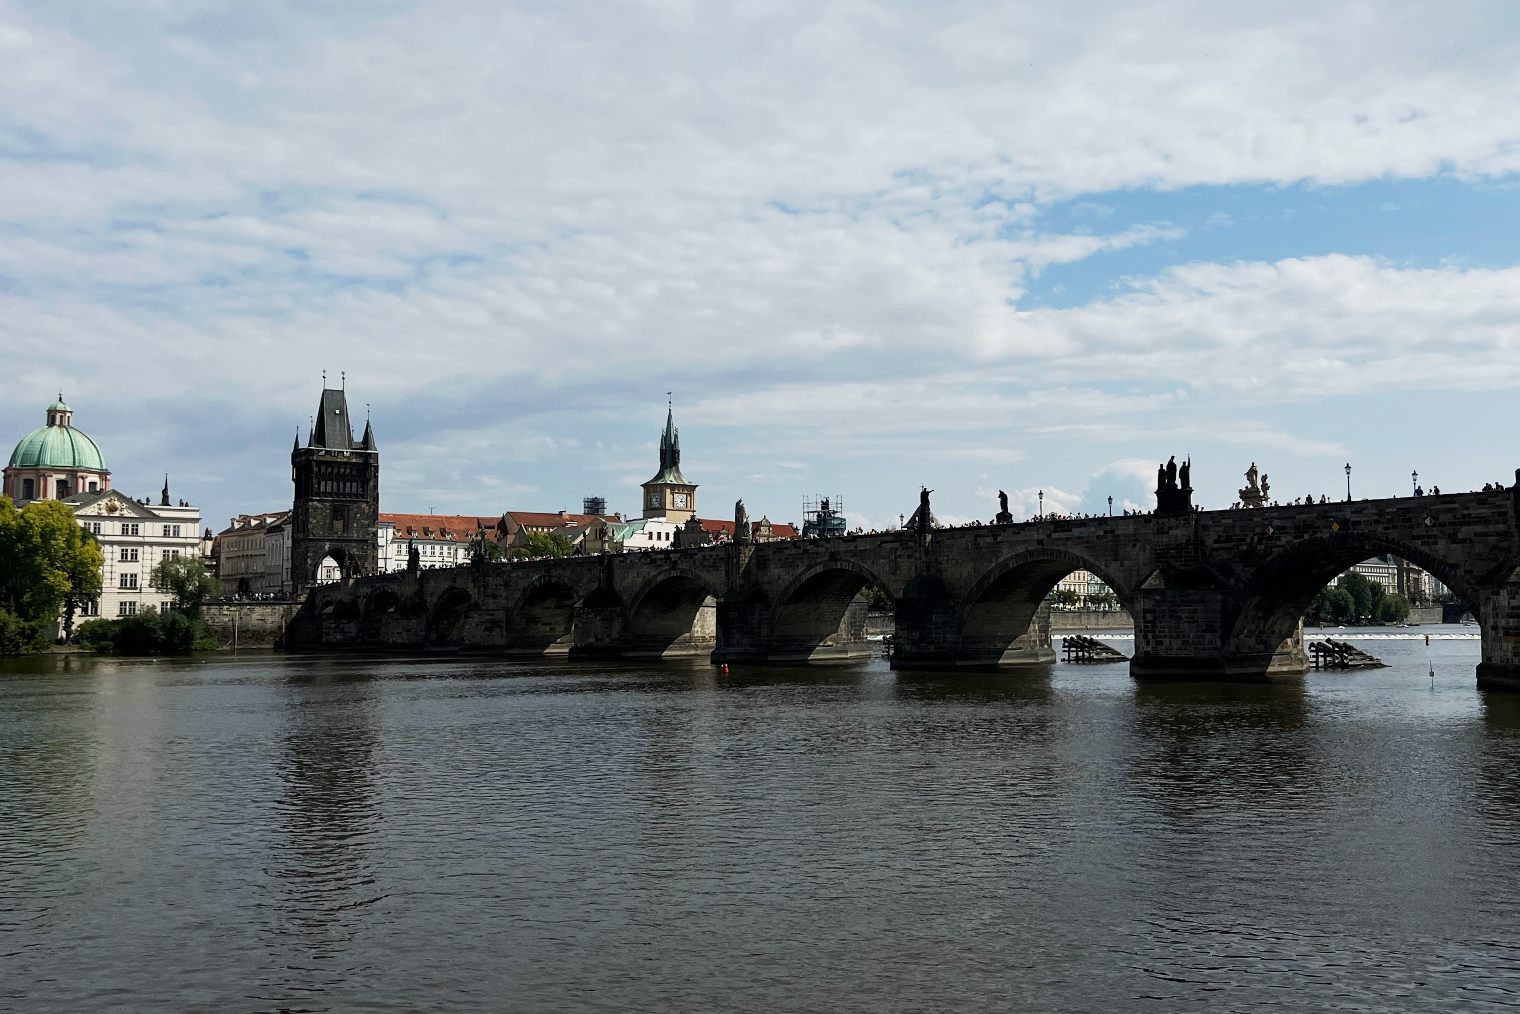 Мой путь к кинотеатру в том числе пролегал через Карлов мост — это одна из главных достопримечательностей Праги